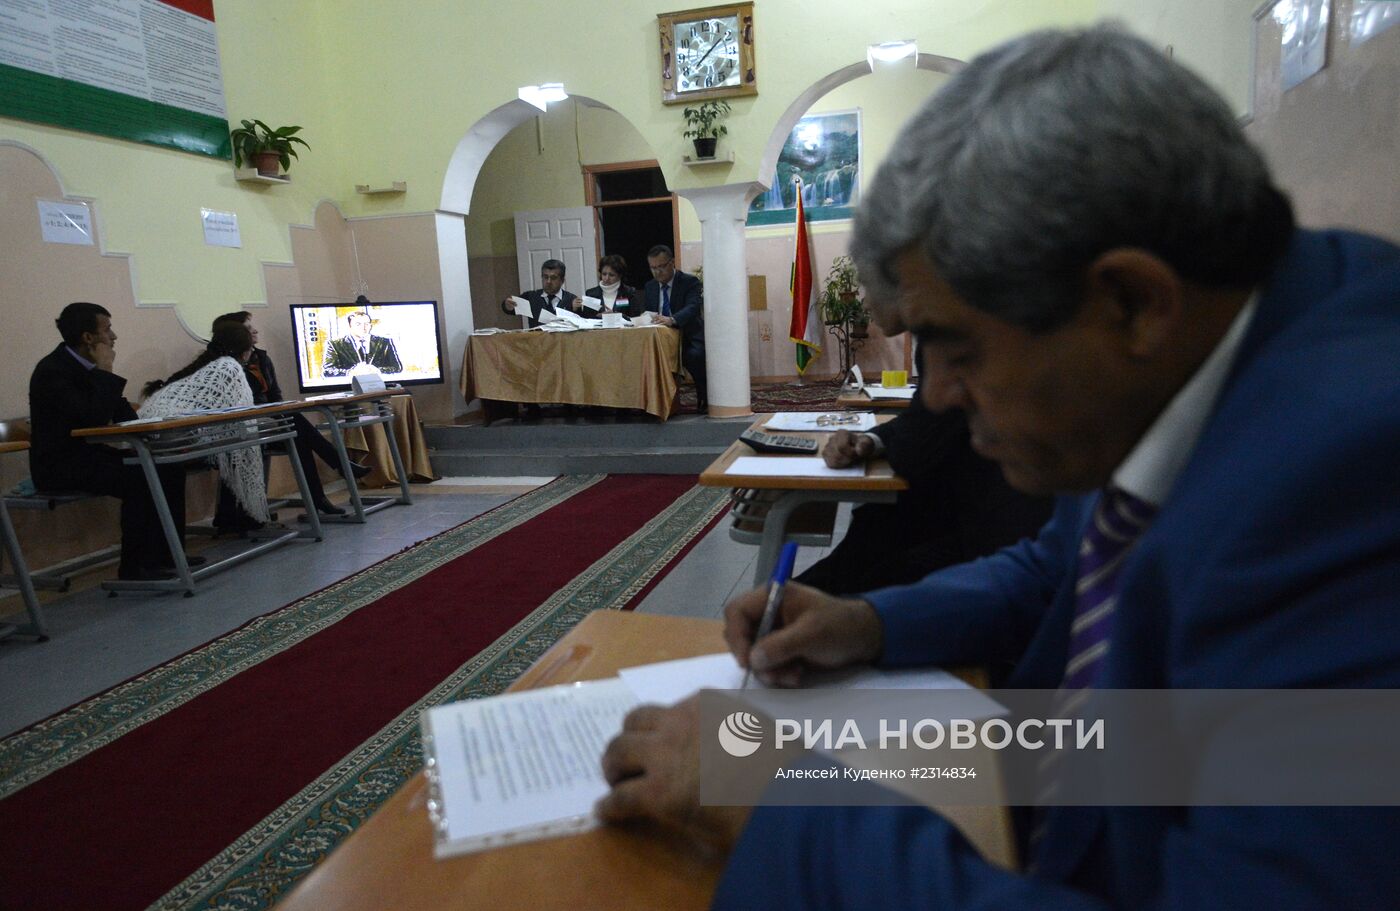 Подсчет голосов на выборах президента Таджикистана